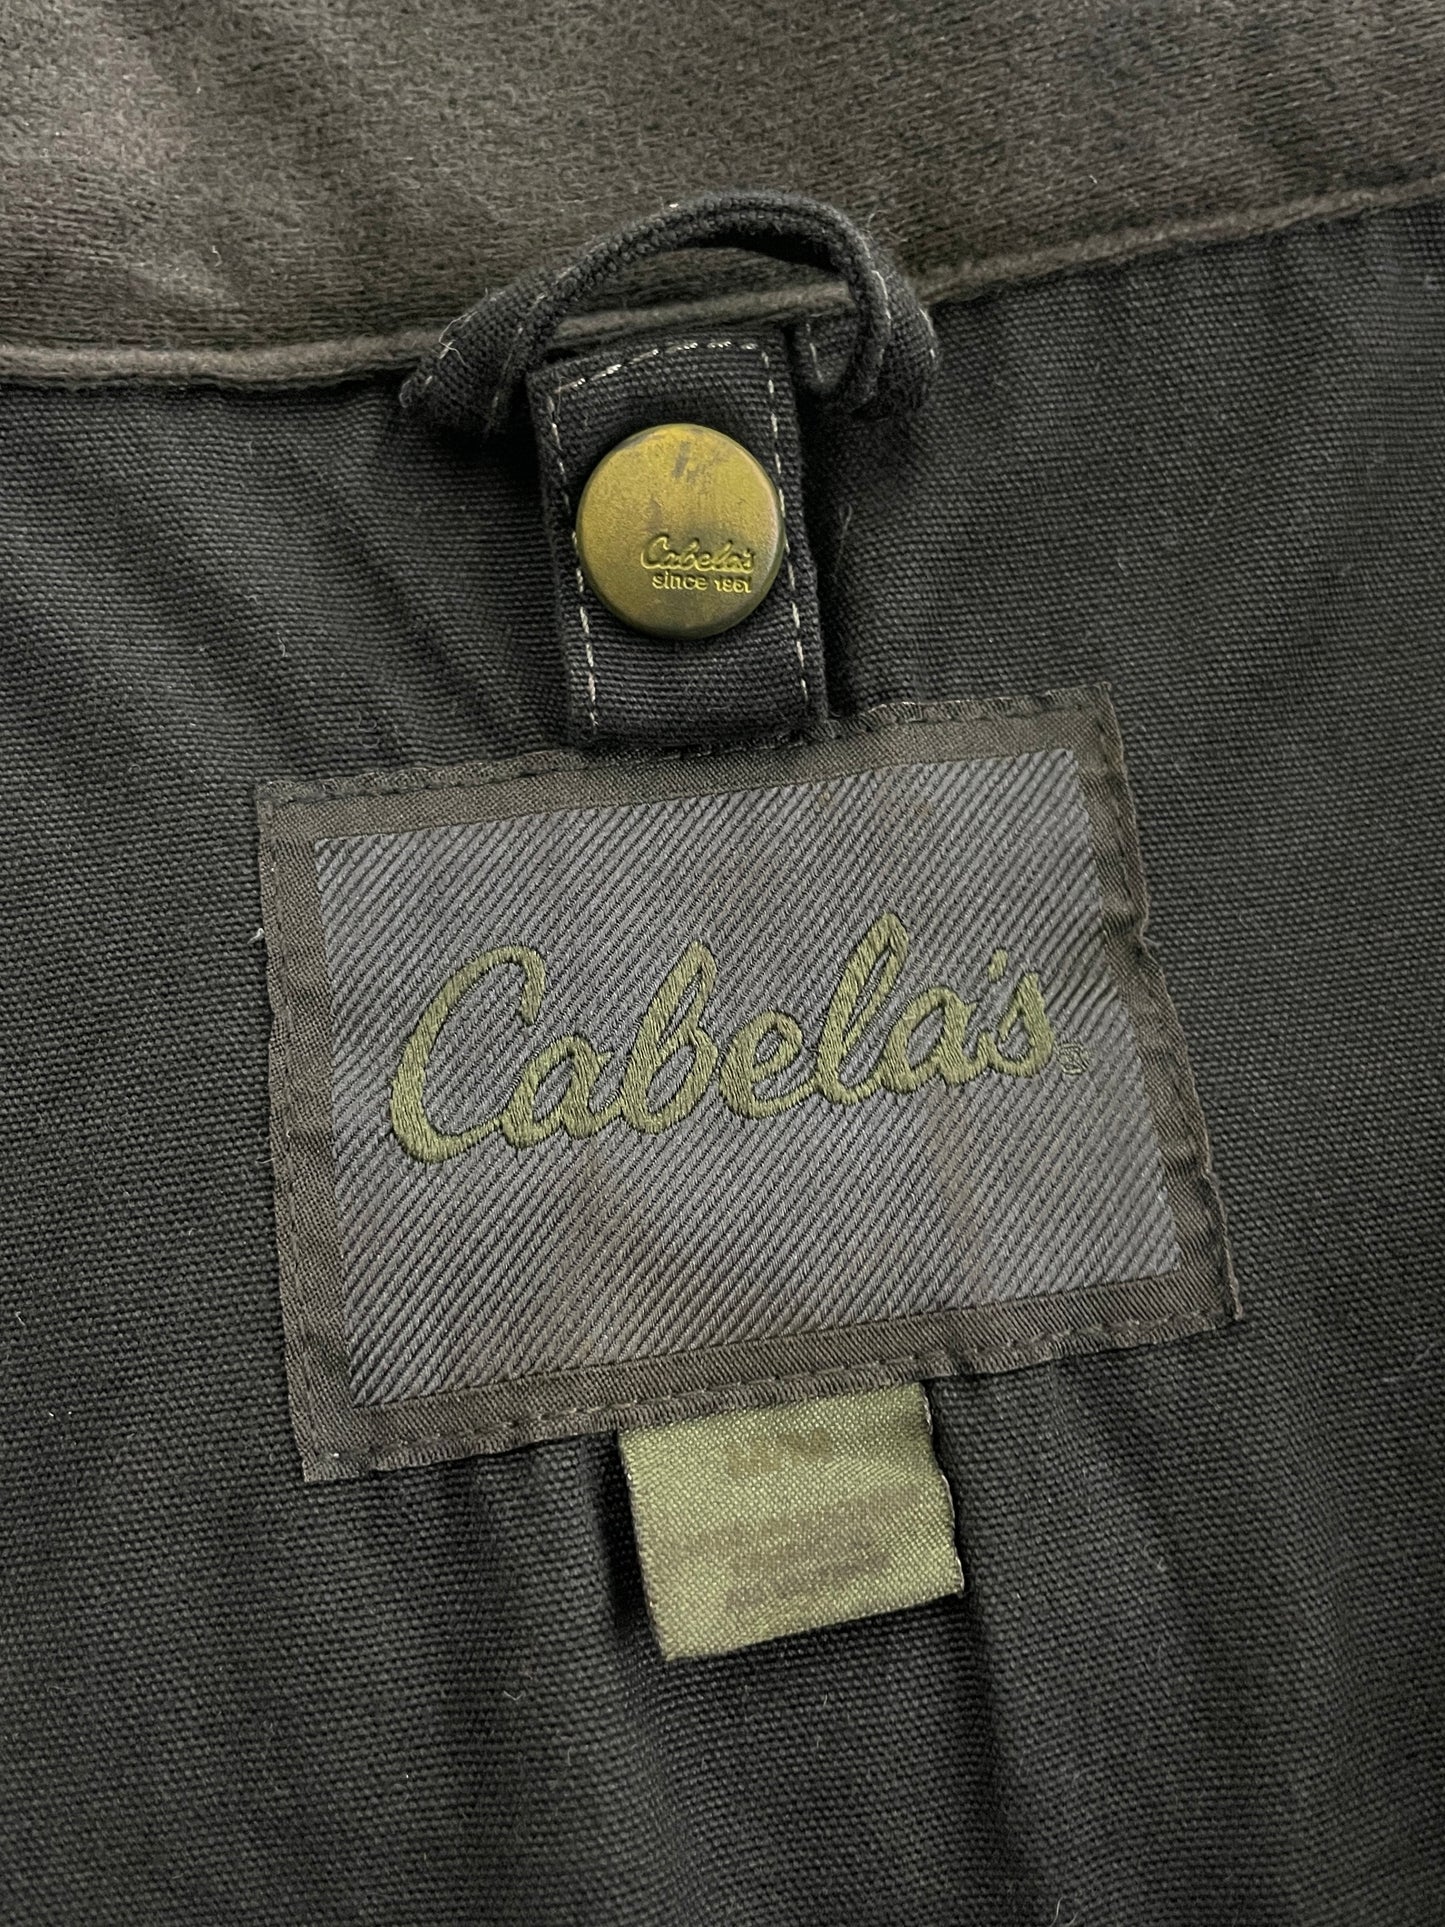 Overdyed Cabella's Fishing Jacket [L]